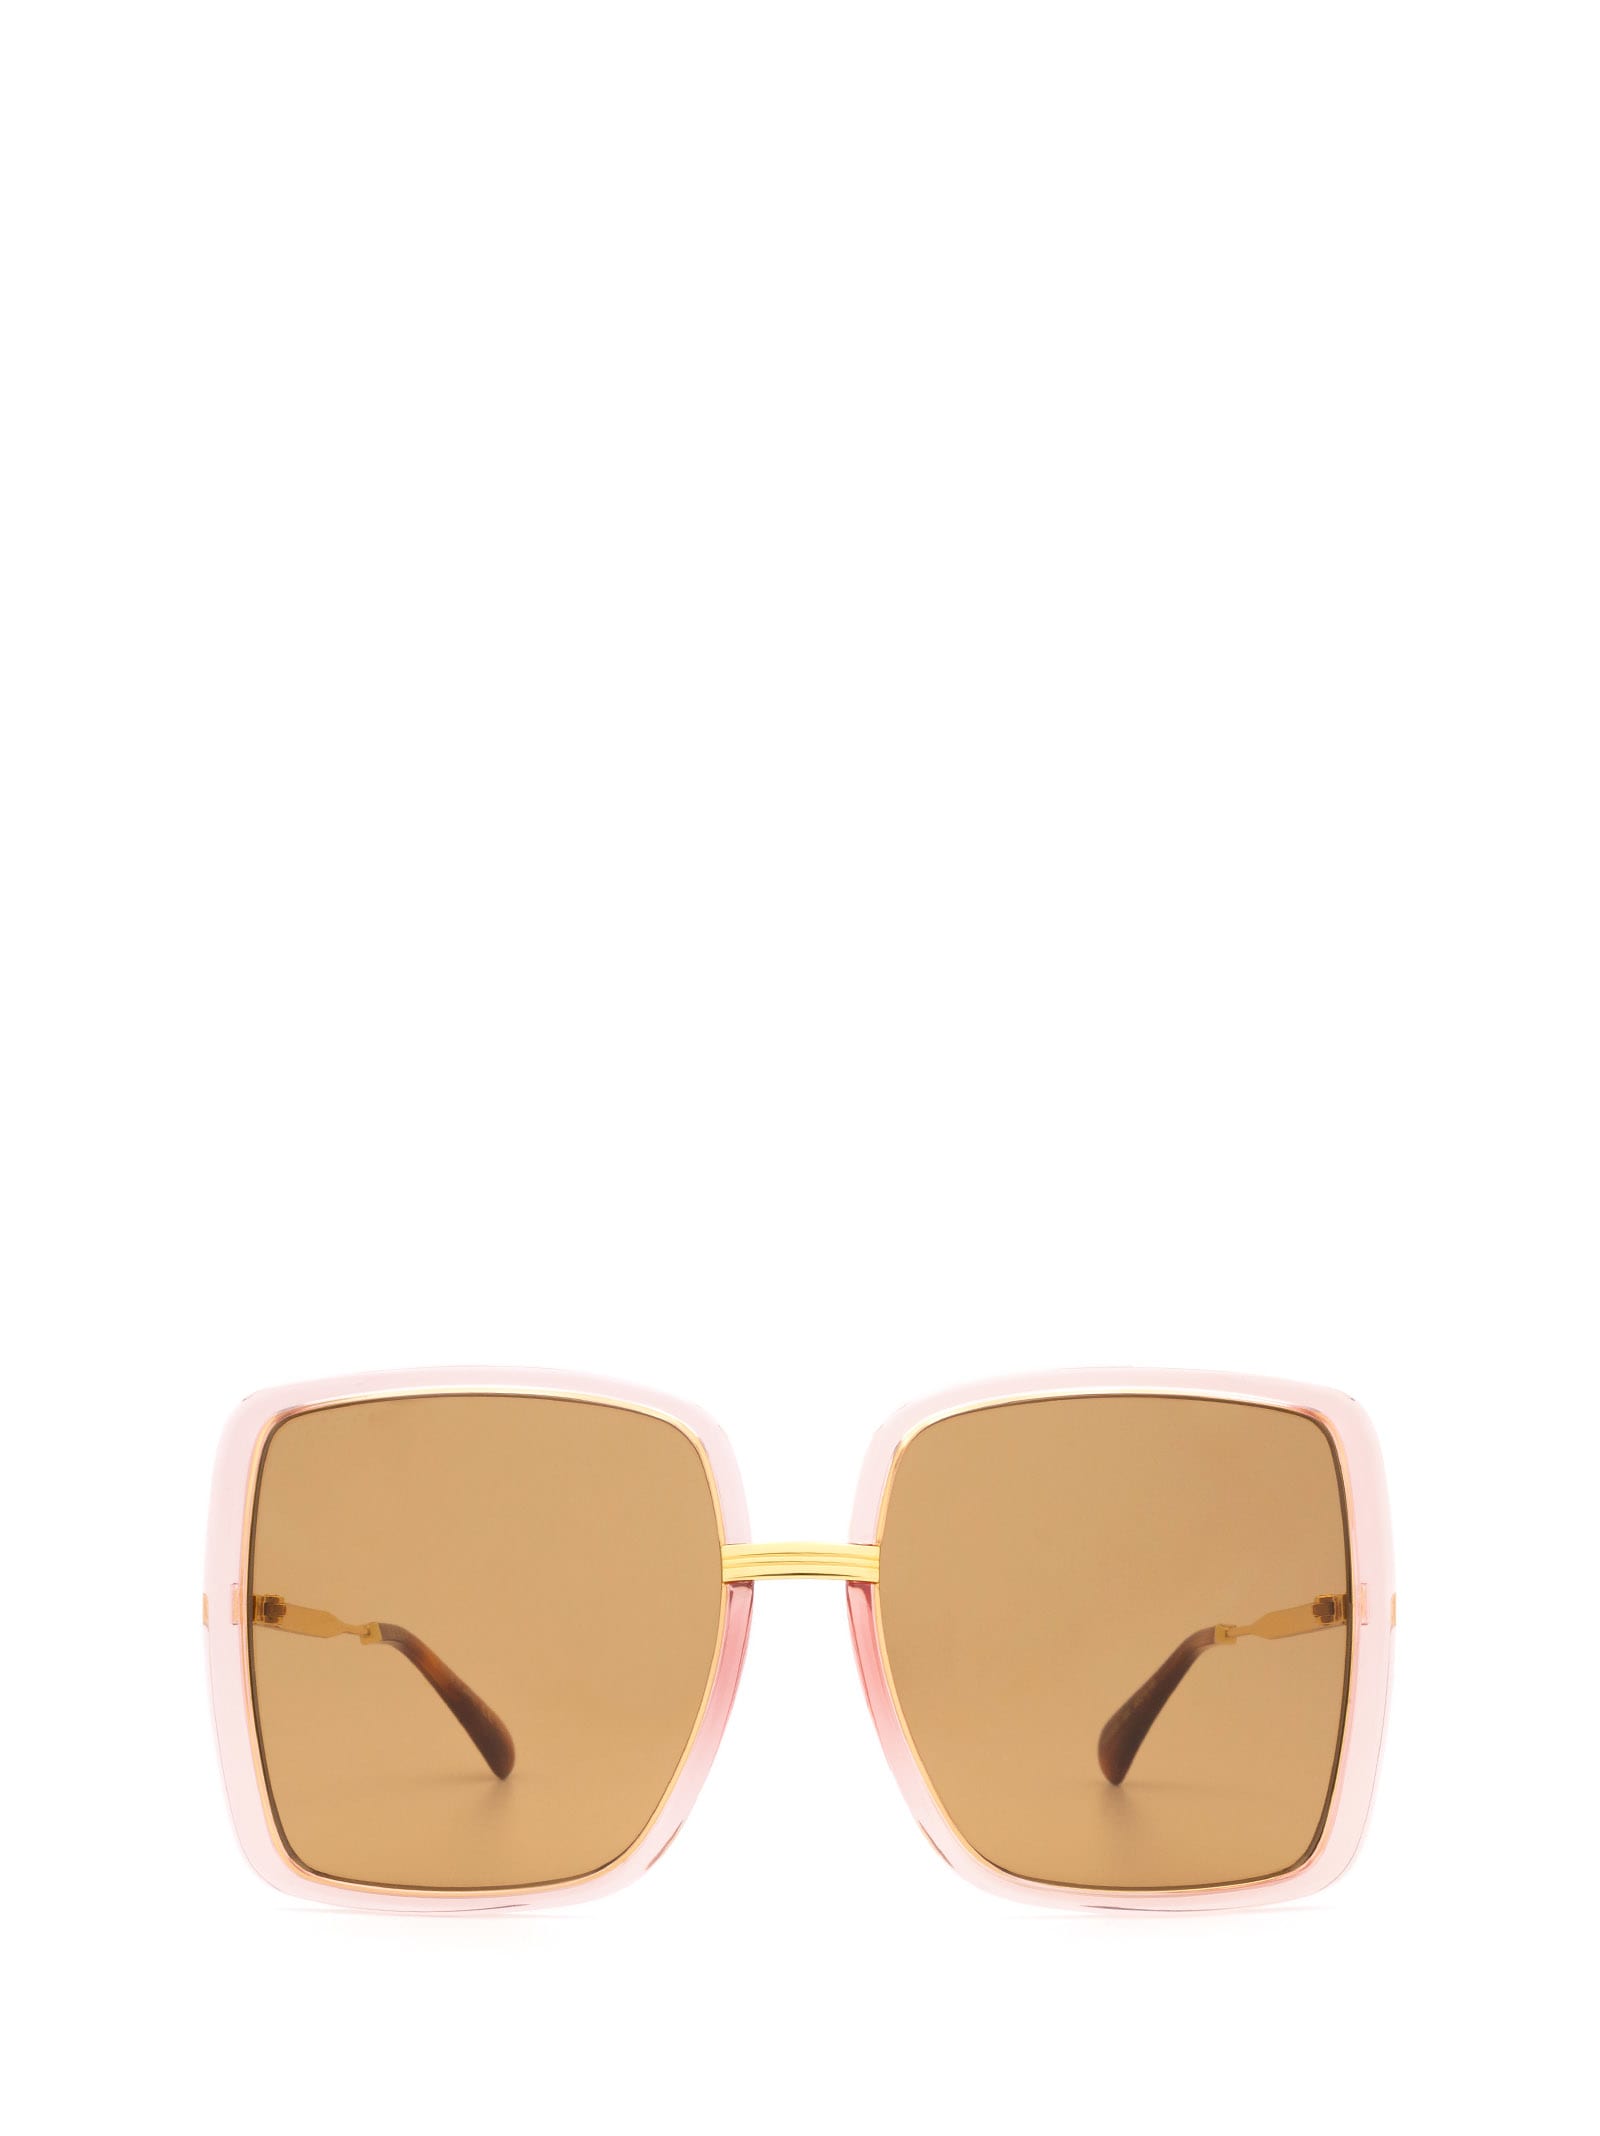 Gucci Eyewear Gucci Gg0903s Pink Rim / Shiny Yellow Gold Gucci Sunglasses